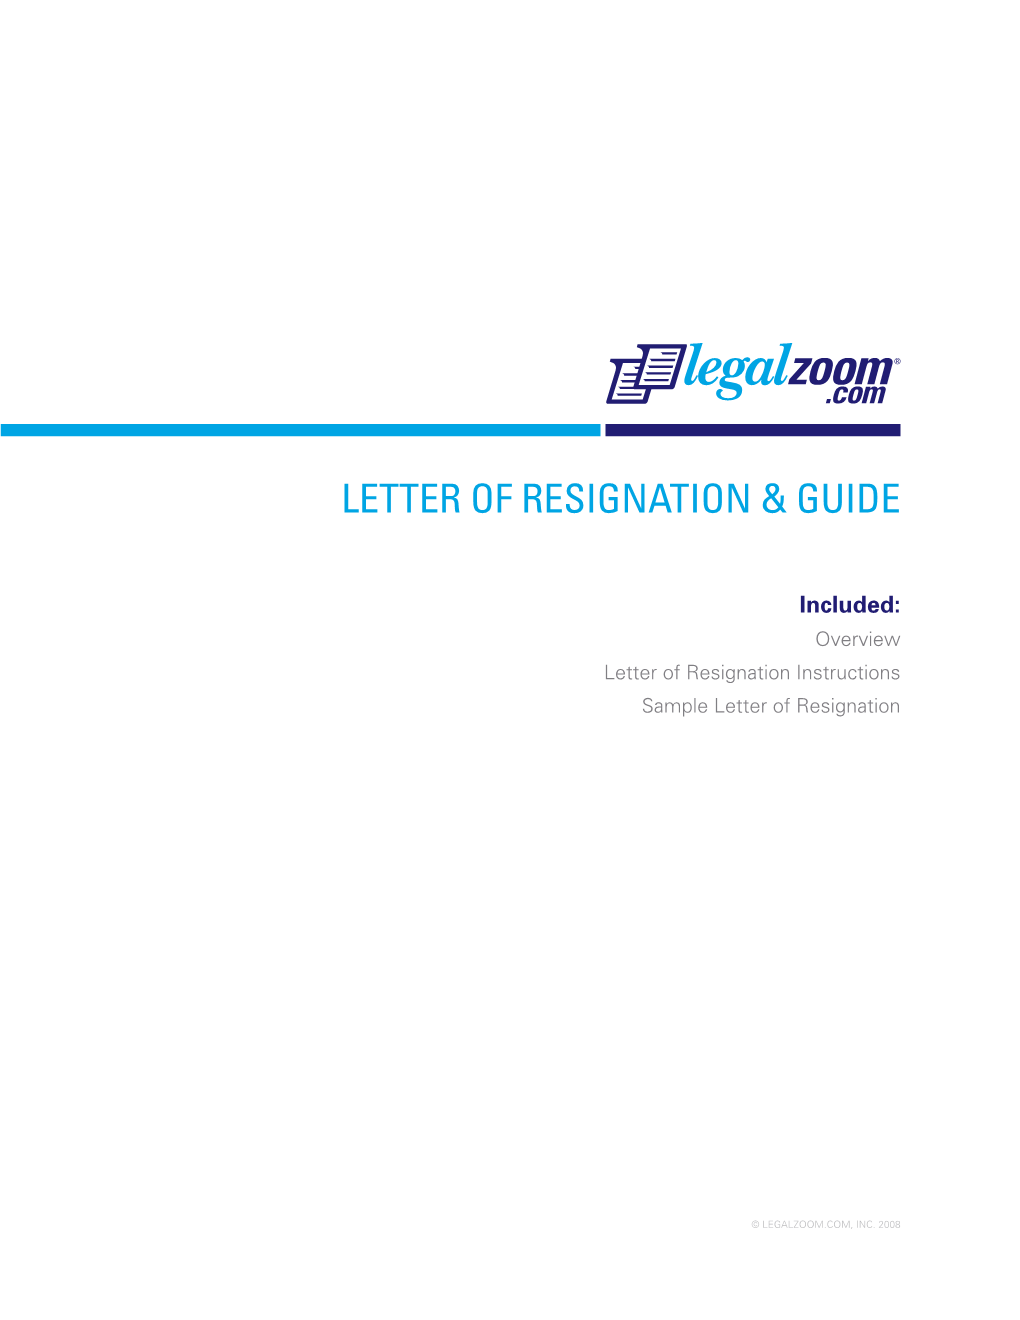 Letter of Resignation & Guide